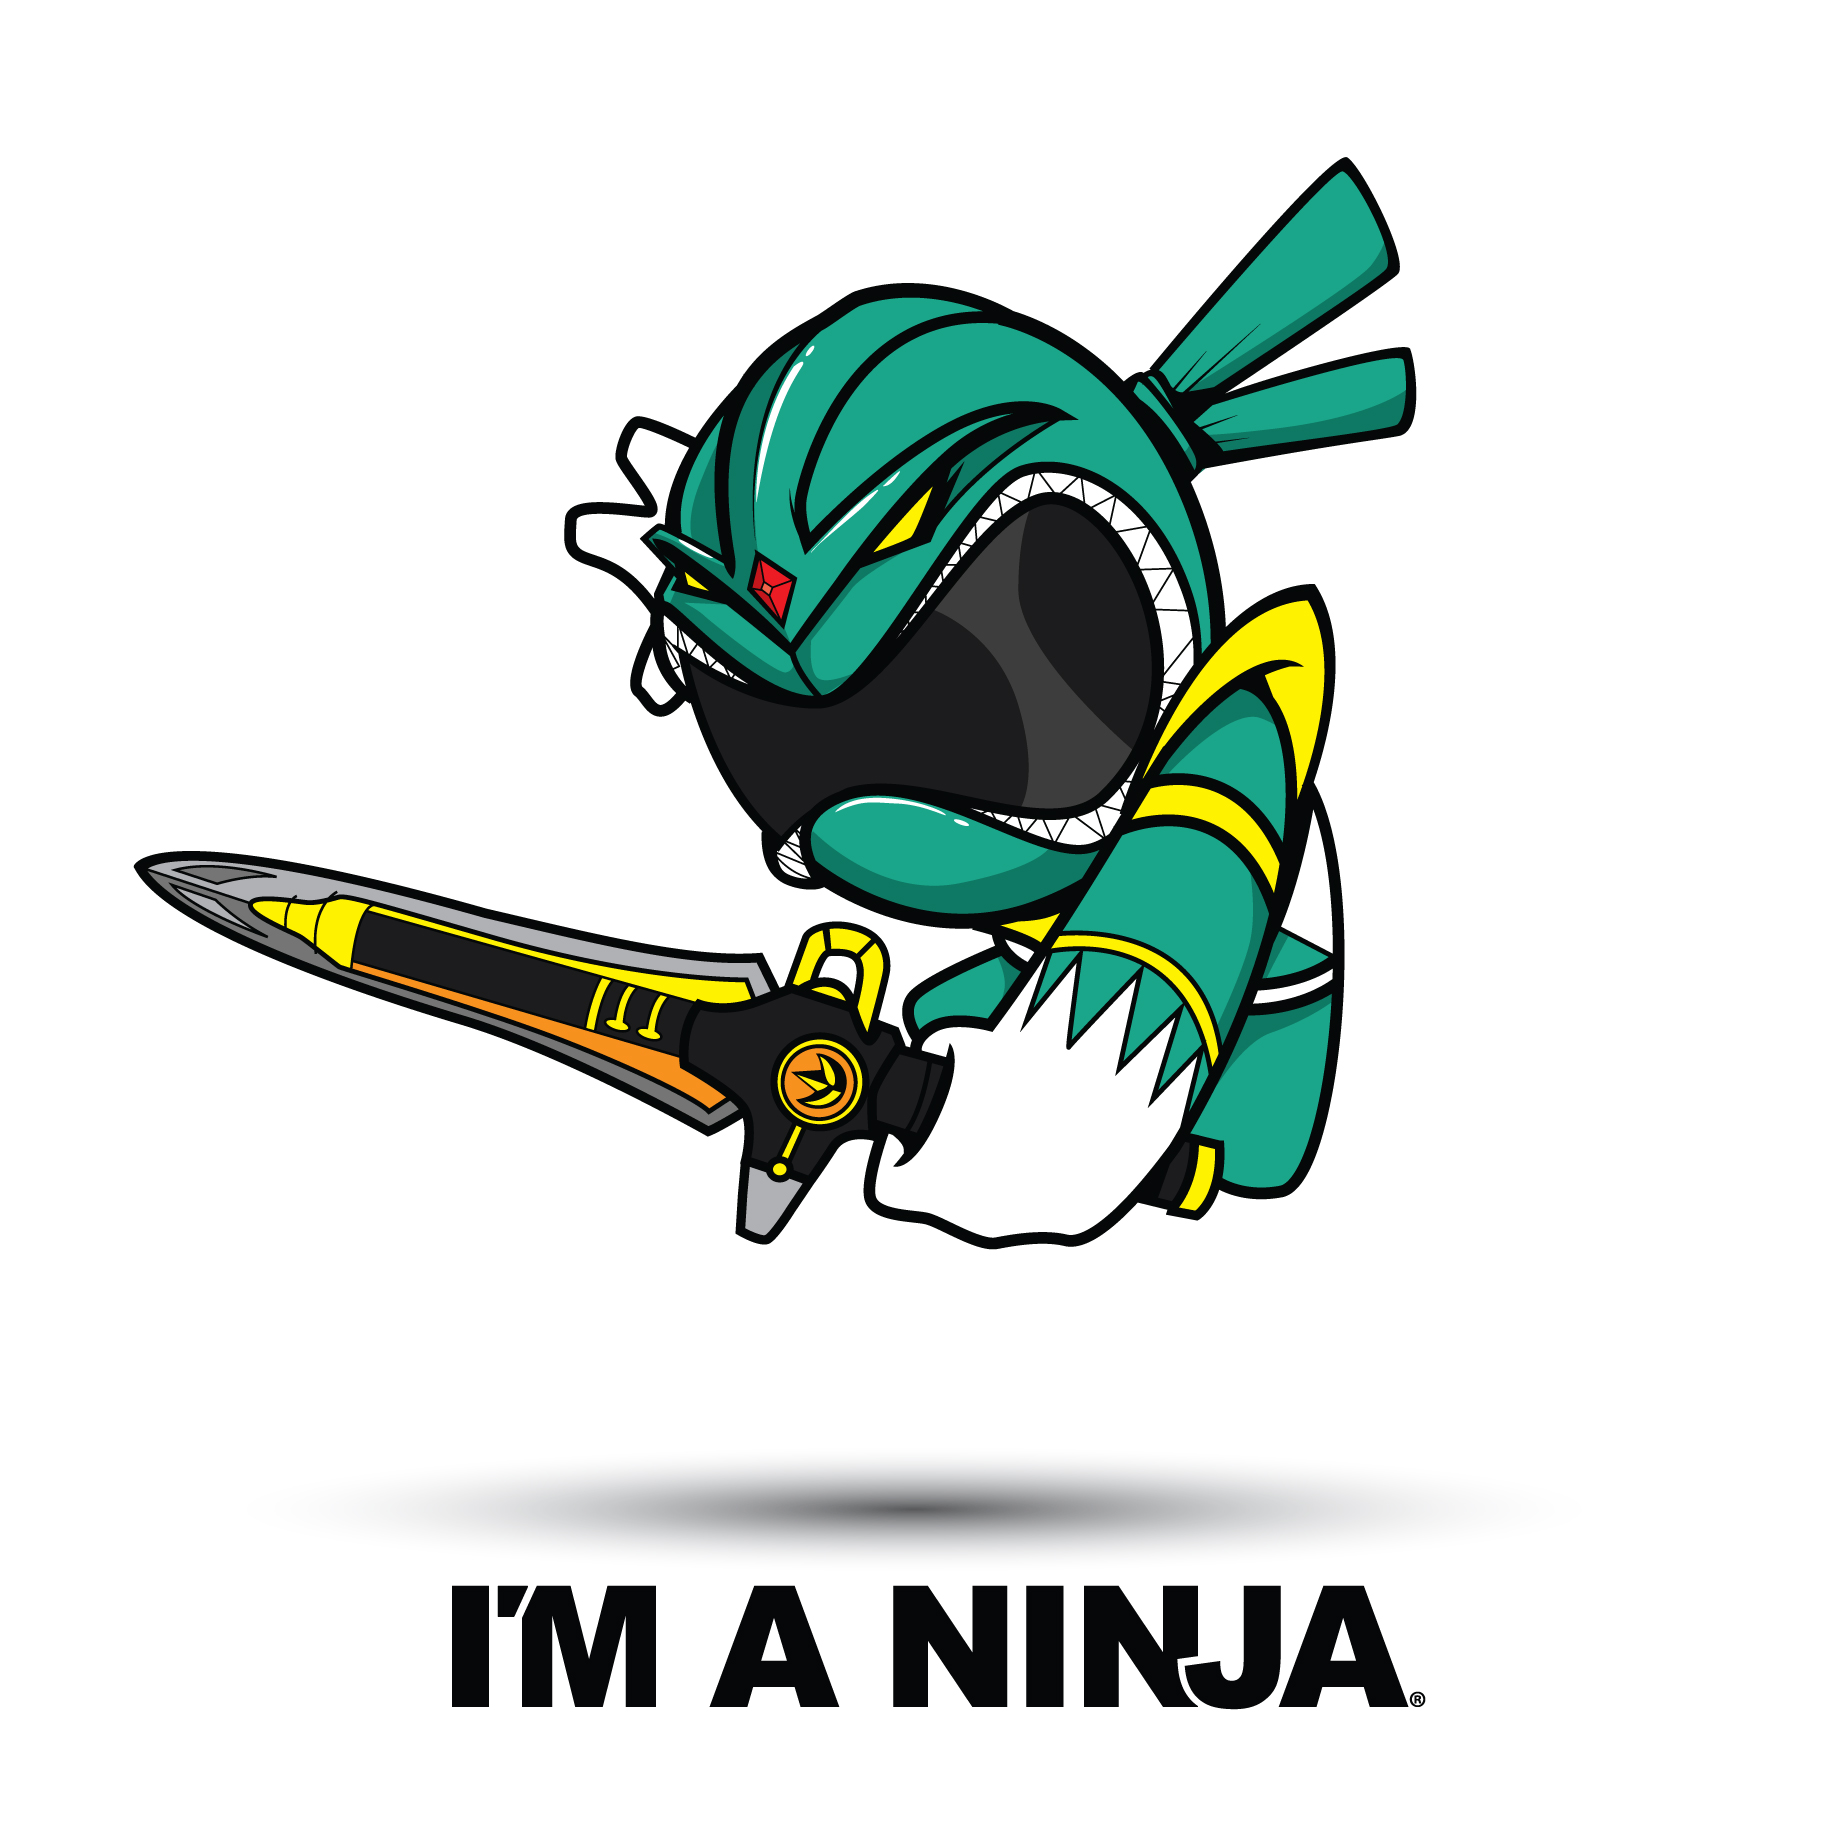 Green Ranger x I'M A NINJA